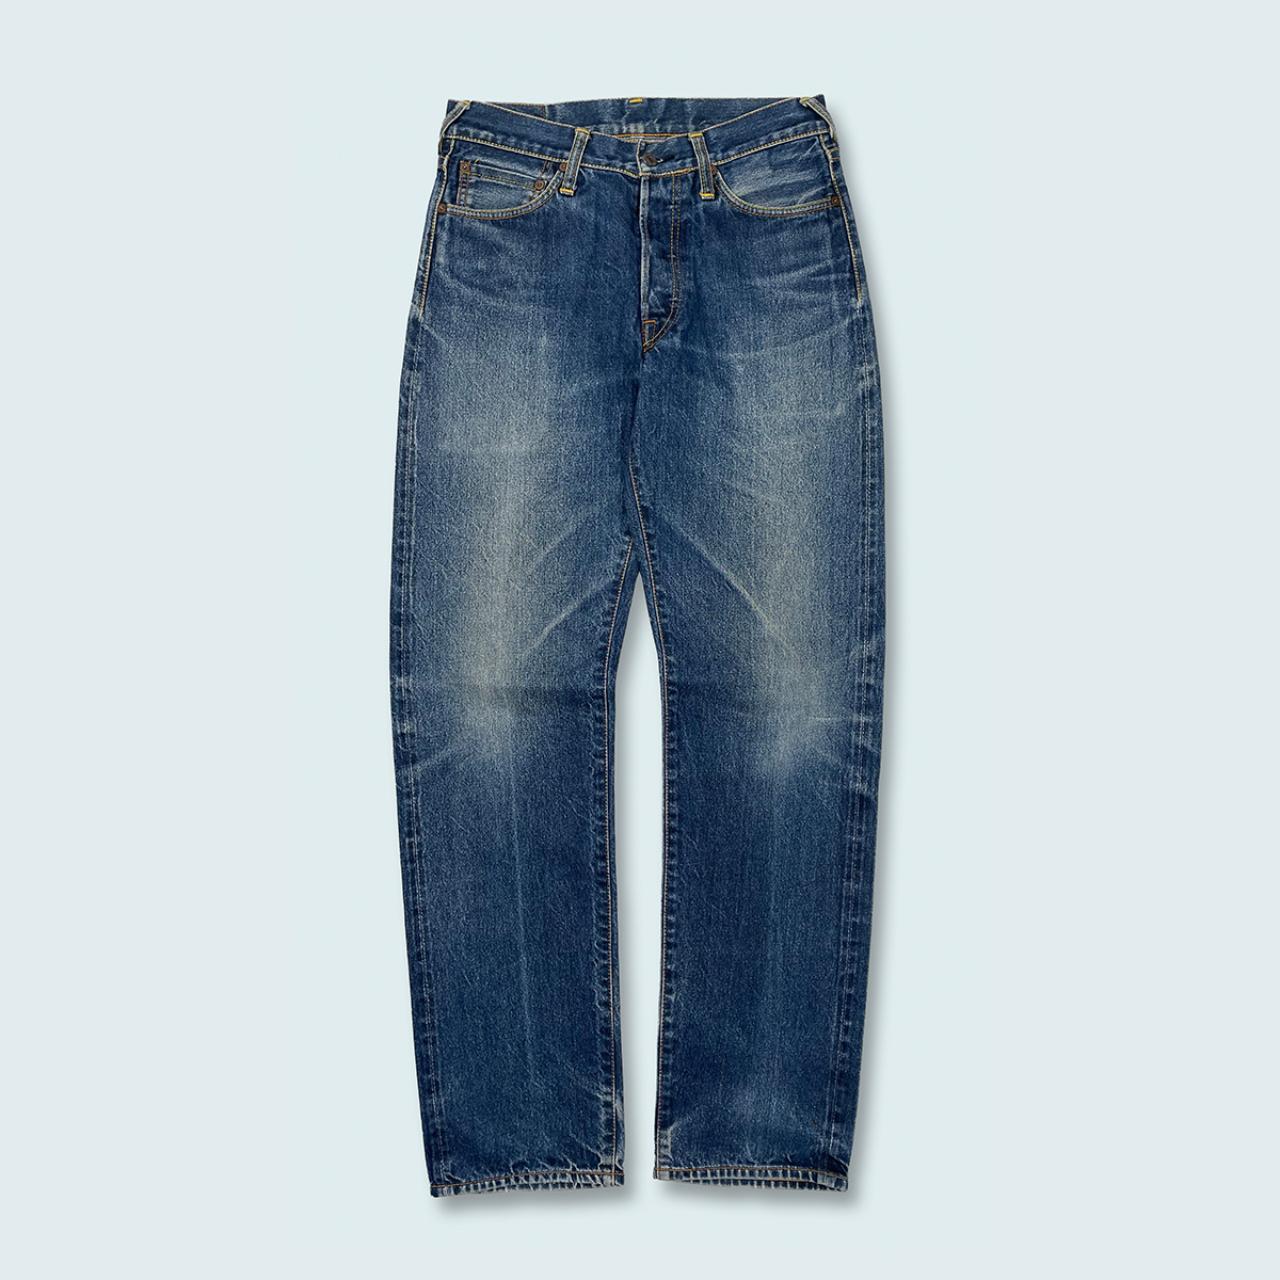 Authentic Vintage Evisu Jeans  (29")